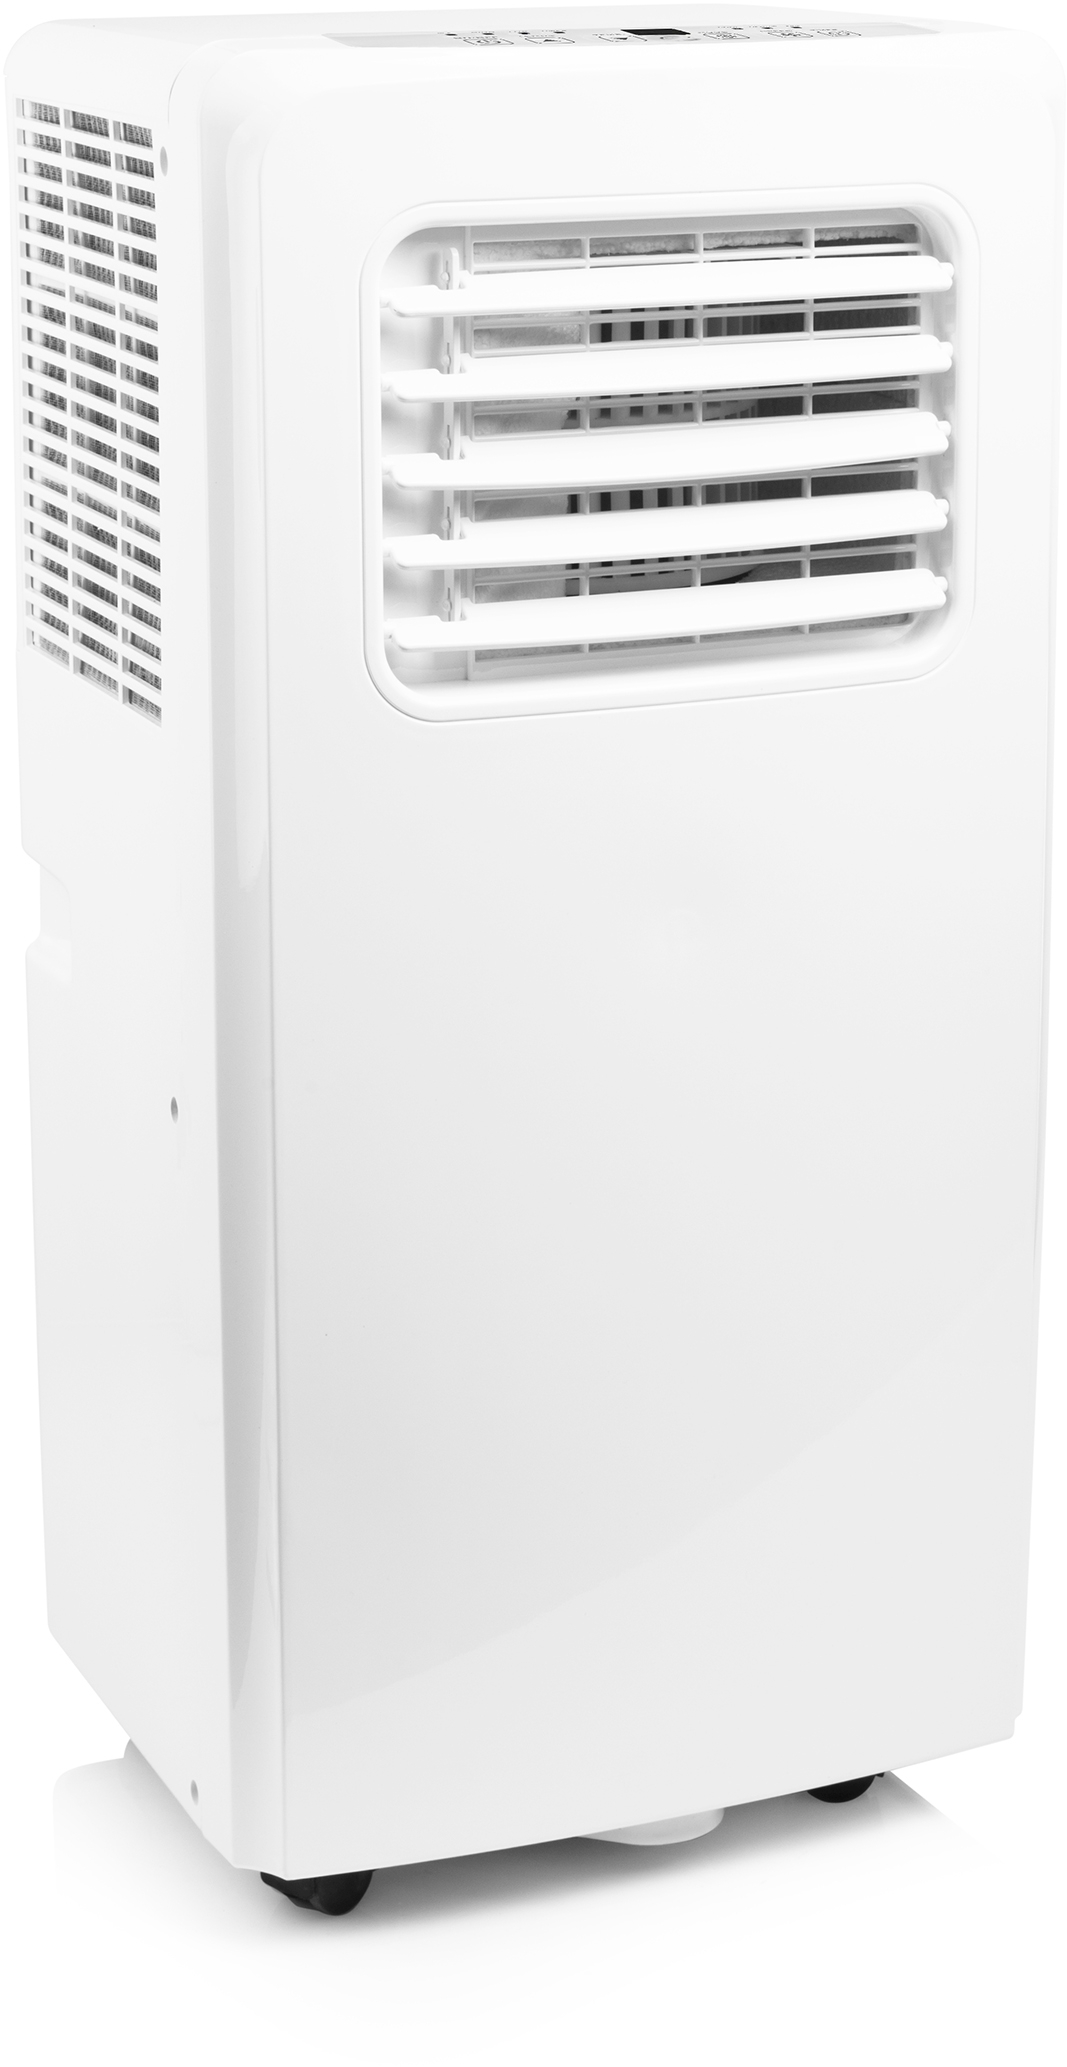 TRISTAR Klimagerät 1000W AC-5529 weiss